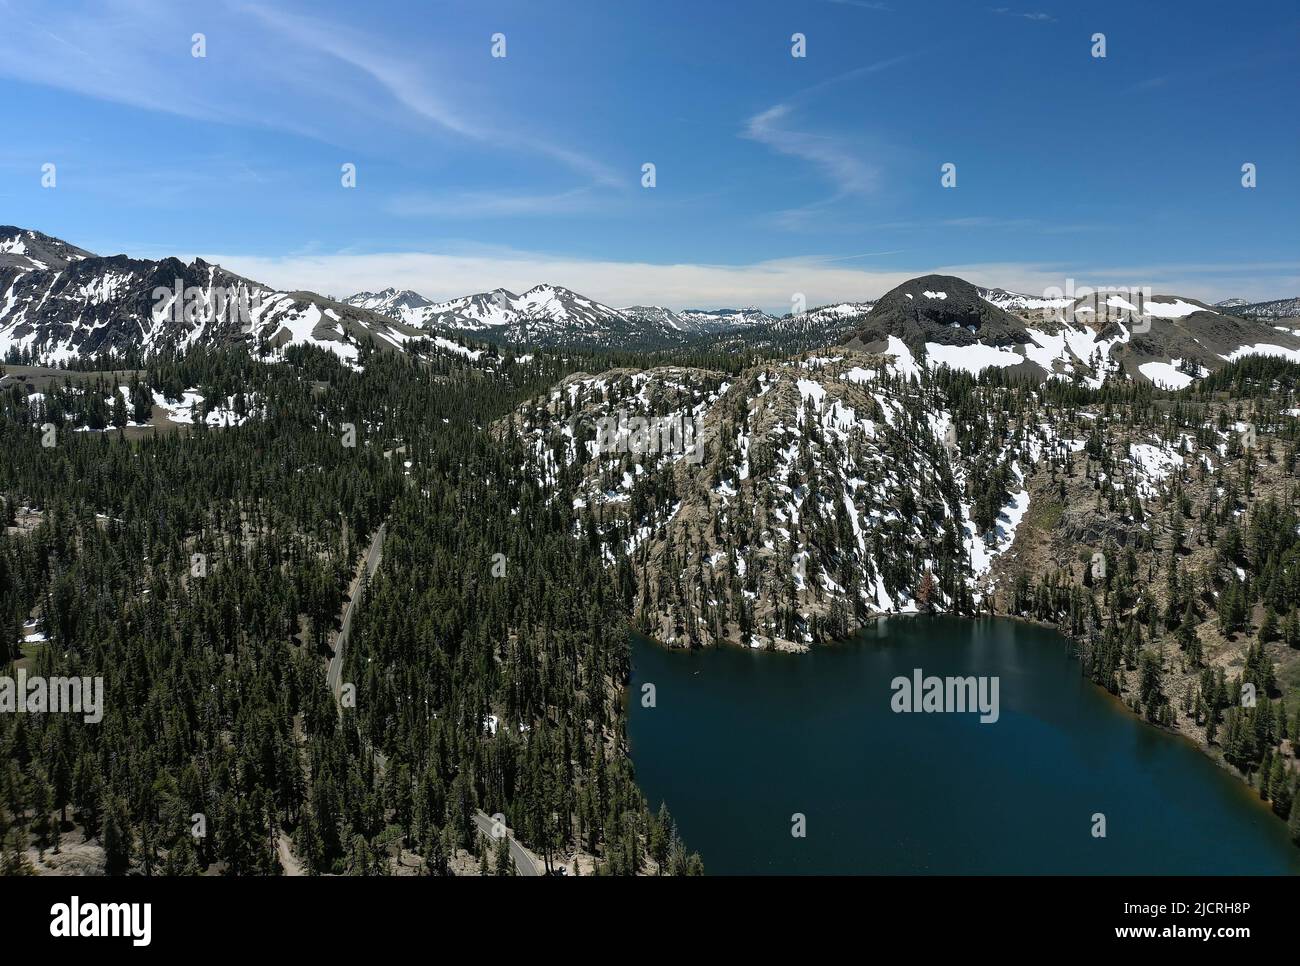 High Sierra Mountains in der Nähe von Markleeville, Kalifornien. Kinney Lake, Lake Alpine und Ebbets Peak werden angezeigt. Stockfoto